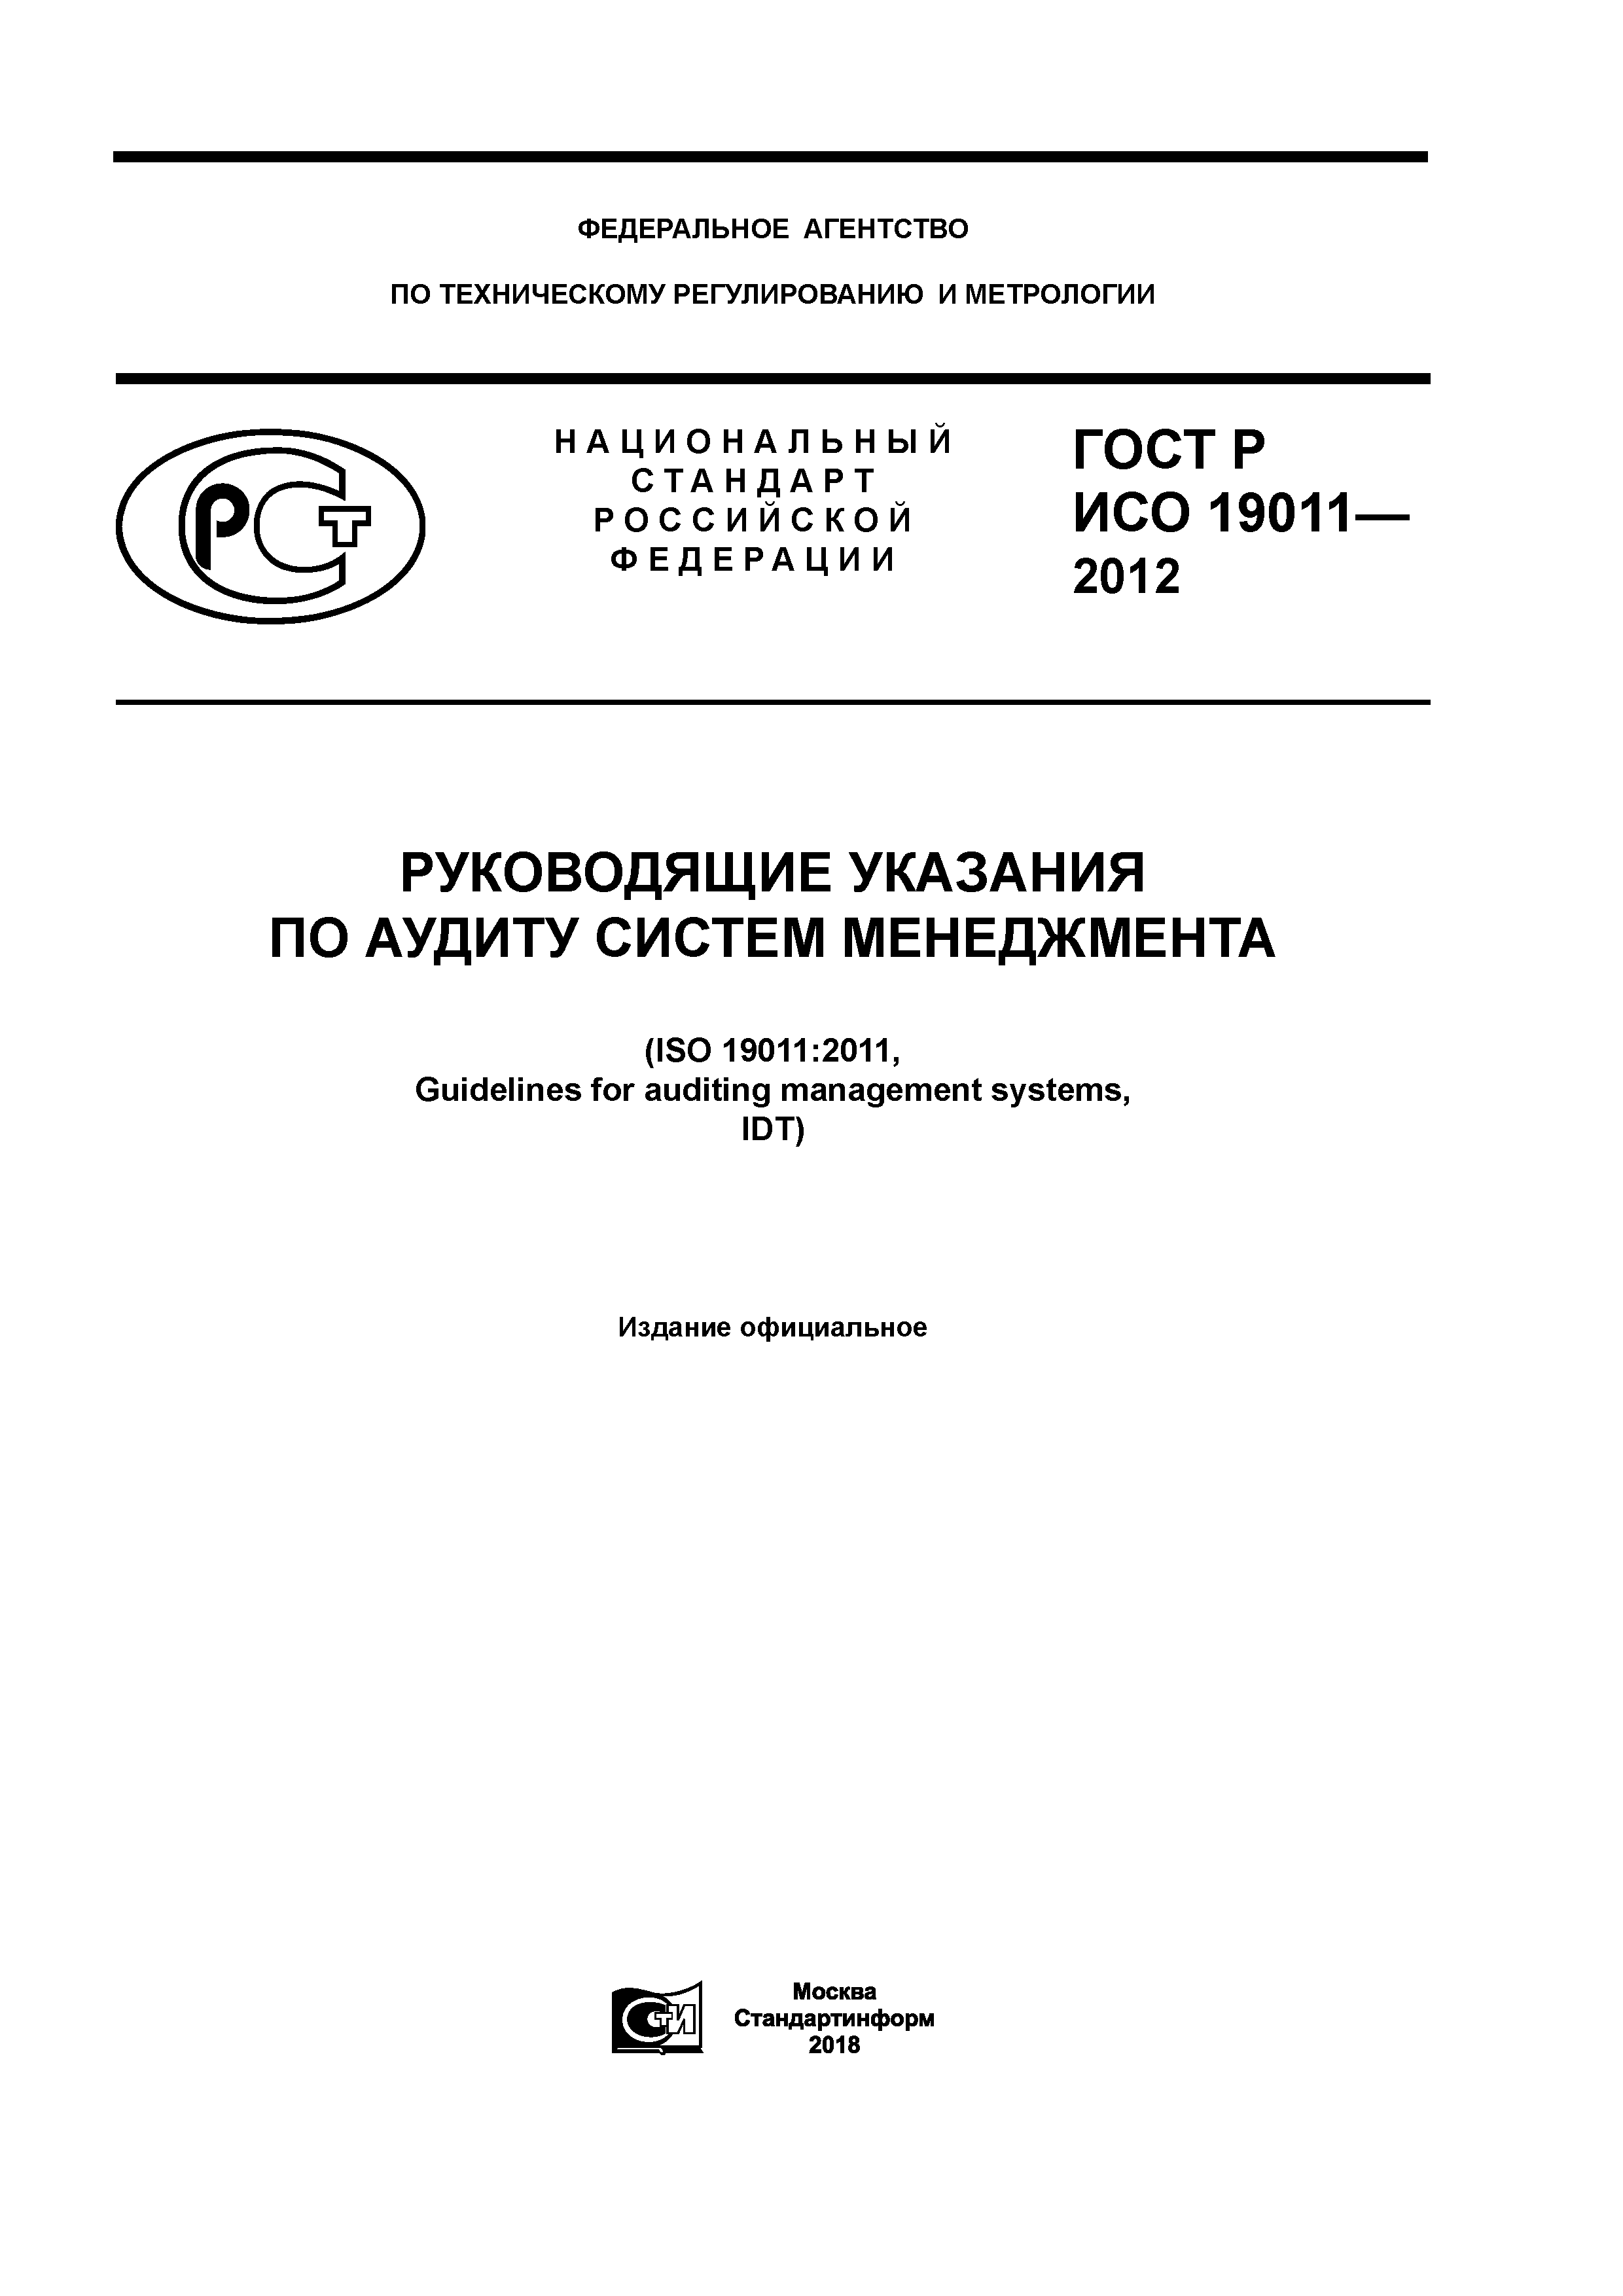 ГОСТ Р ИСО 19011-2012